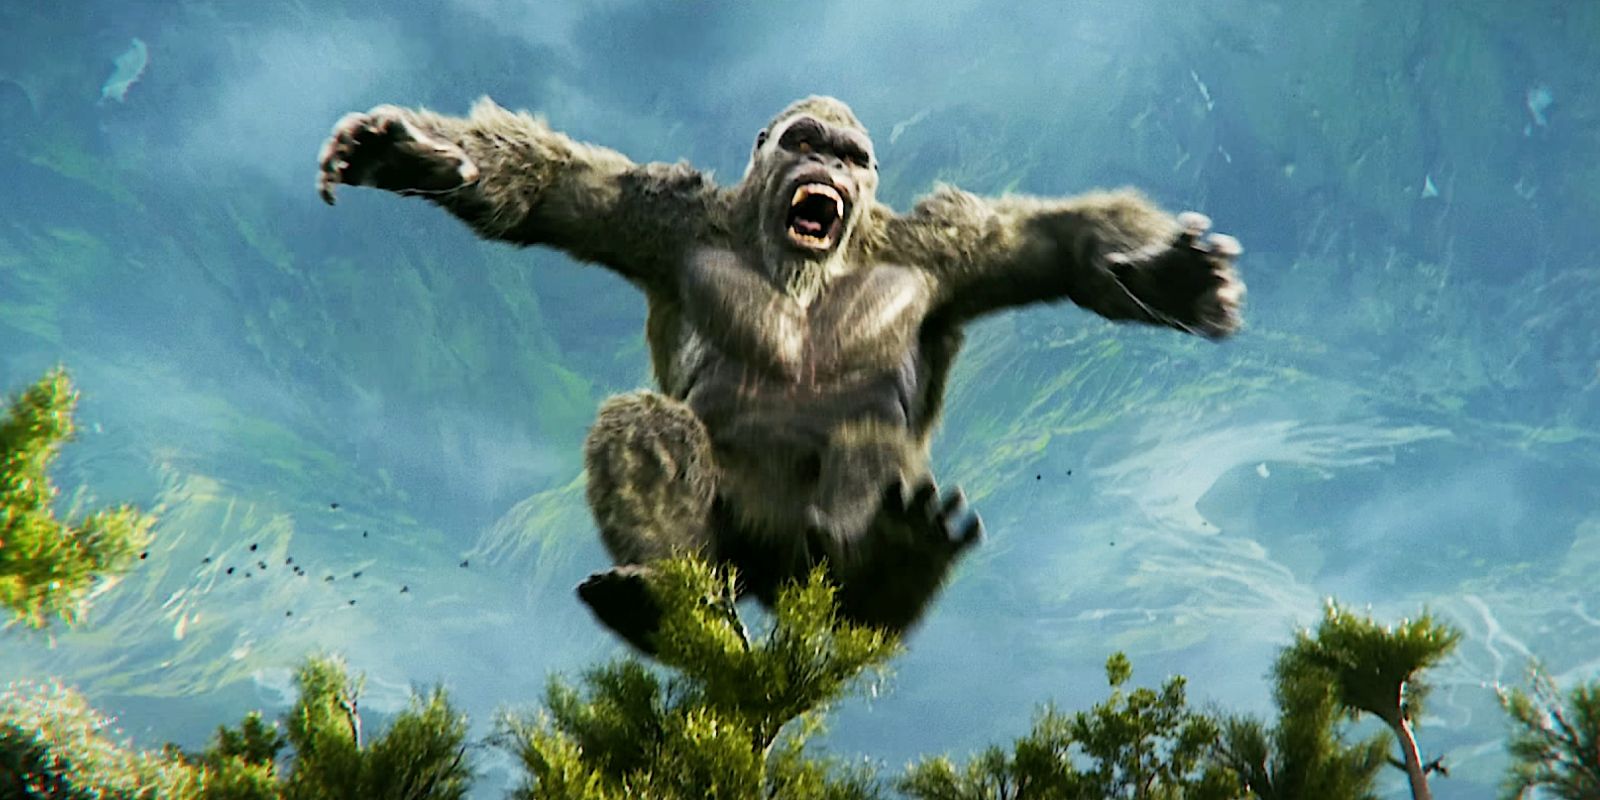 King Kongs And Godzillas Size Comparison - borninspace